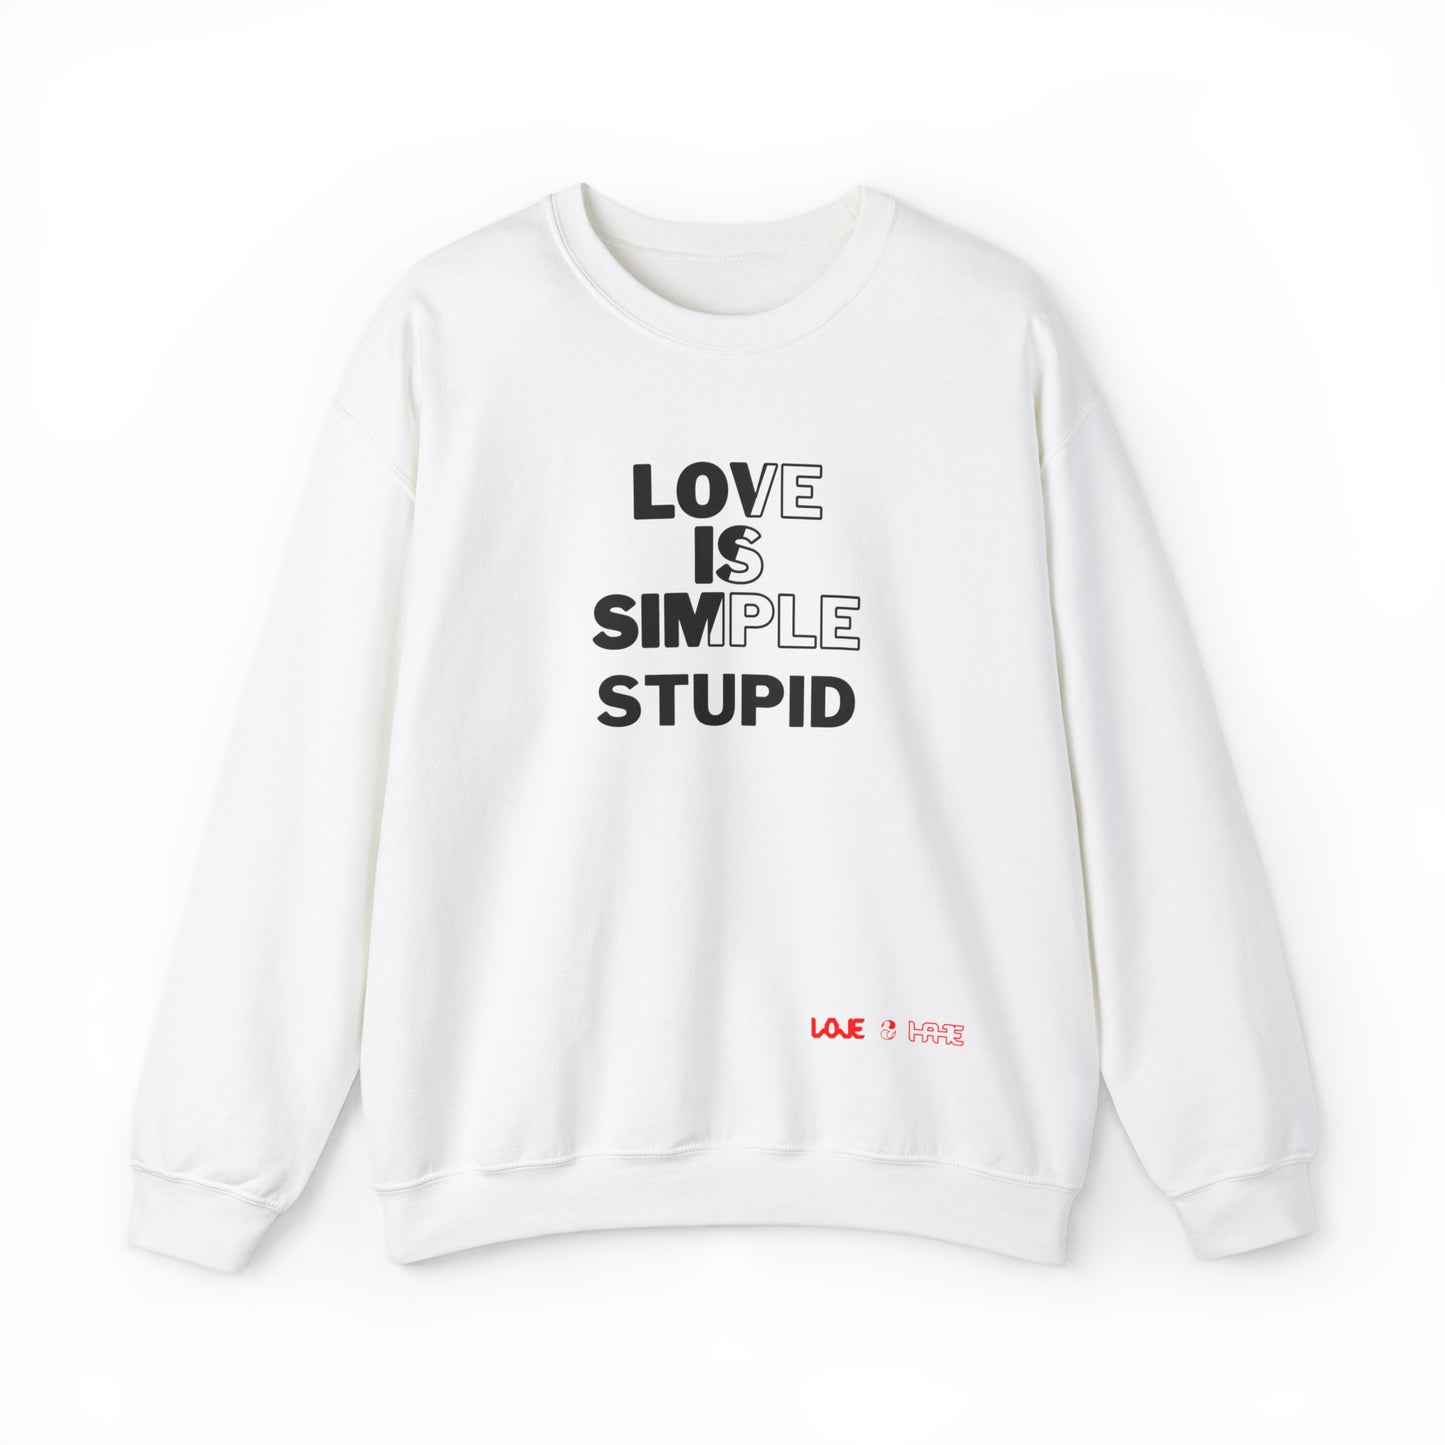 Love Is Simple Stupid Crewneck Sweatshirt